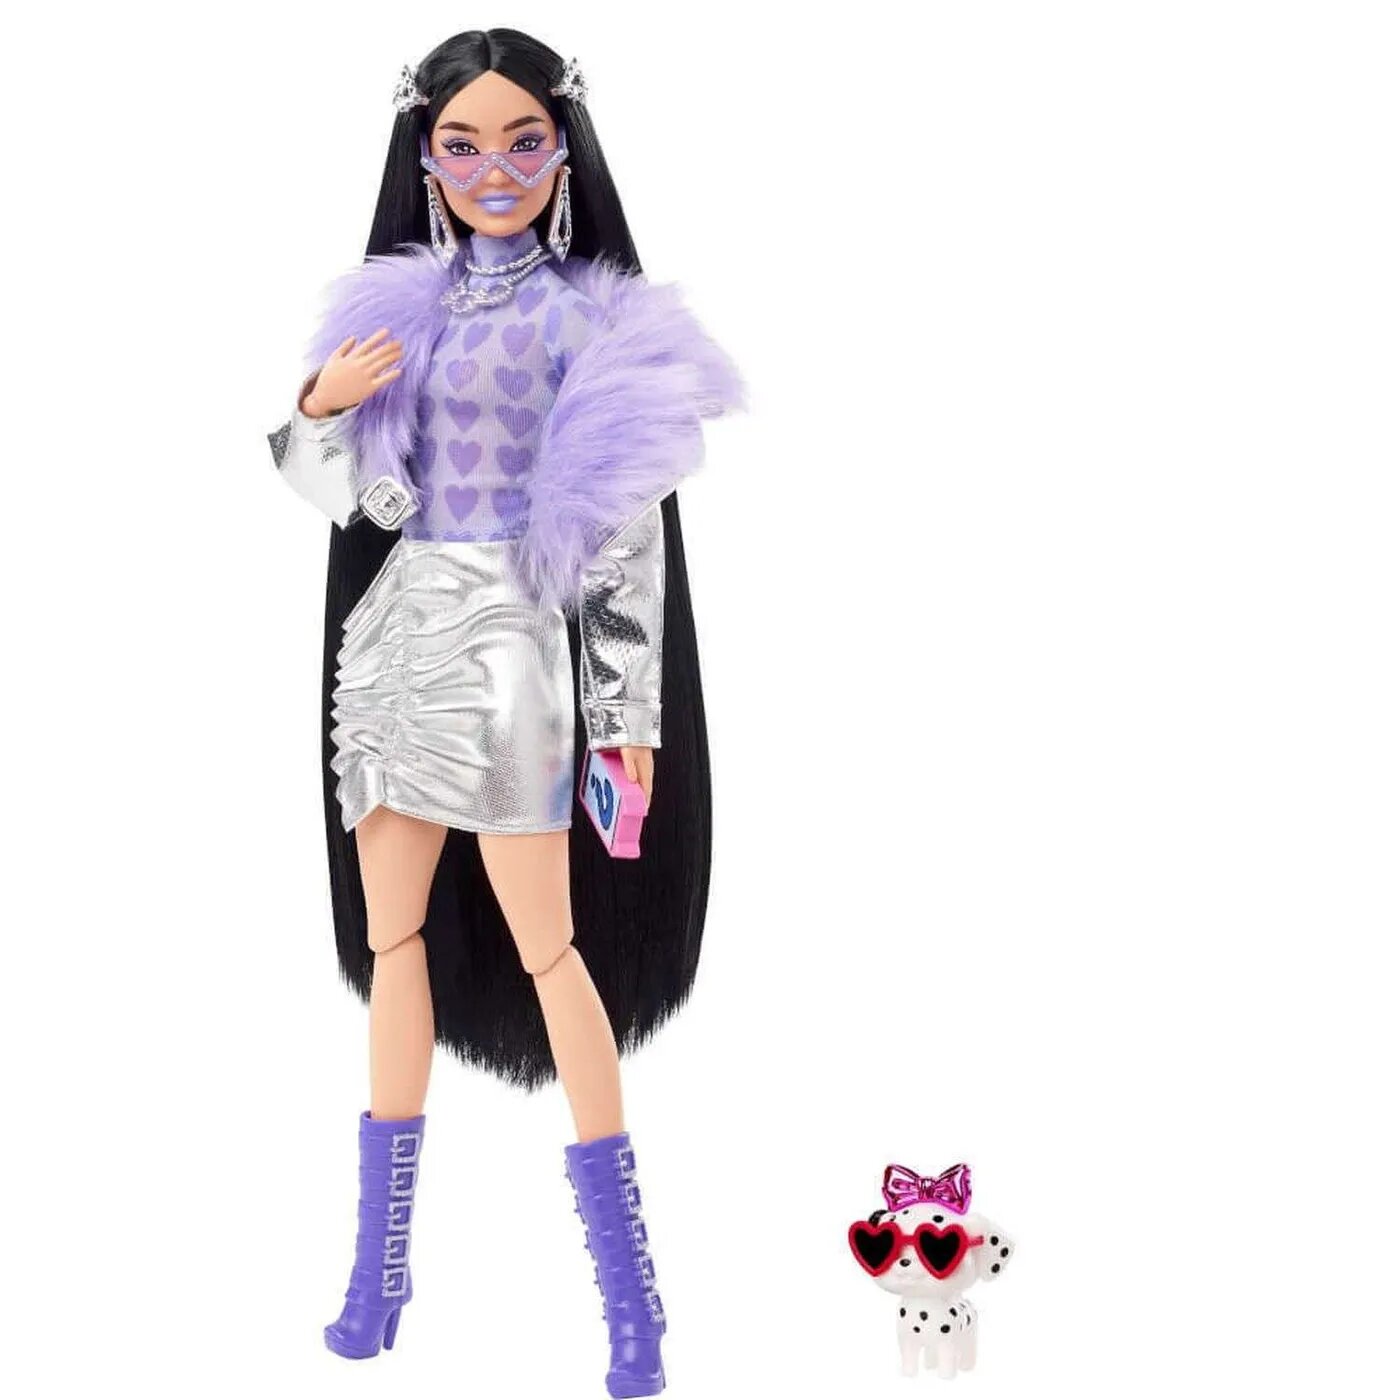 Кукла Barbie Экстра с черными волосами 57138416